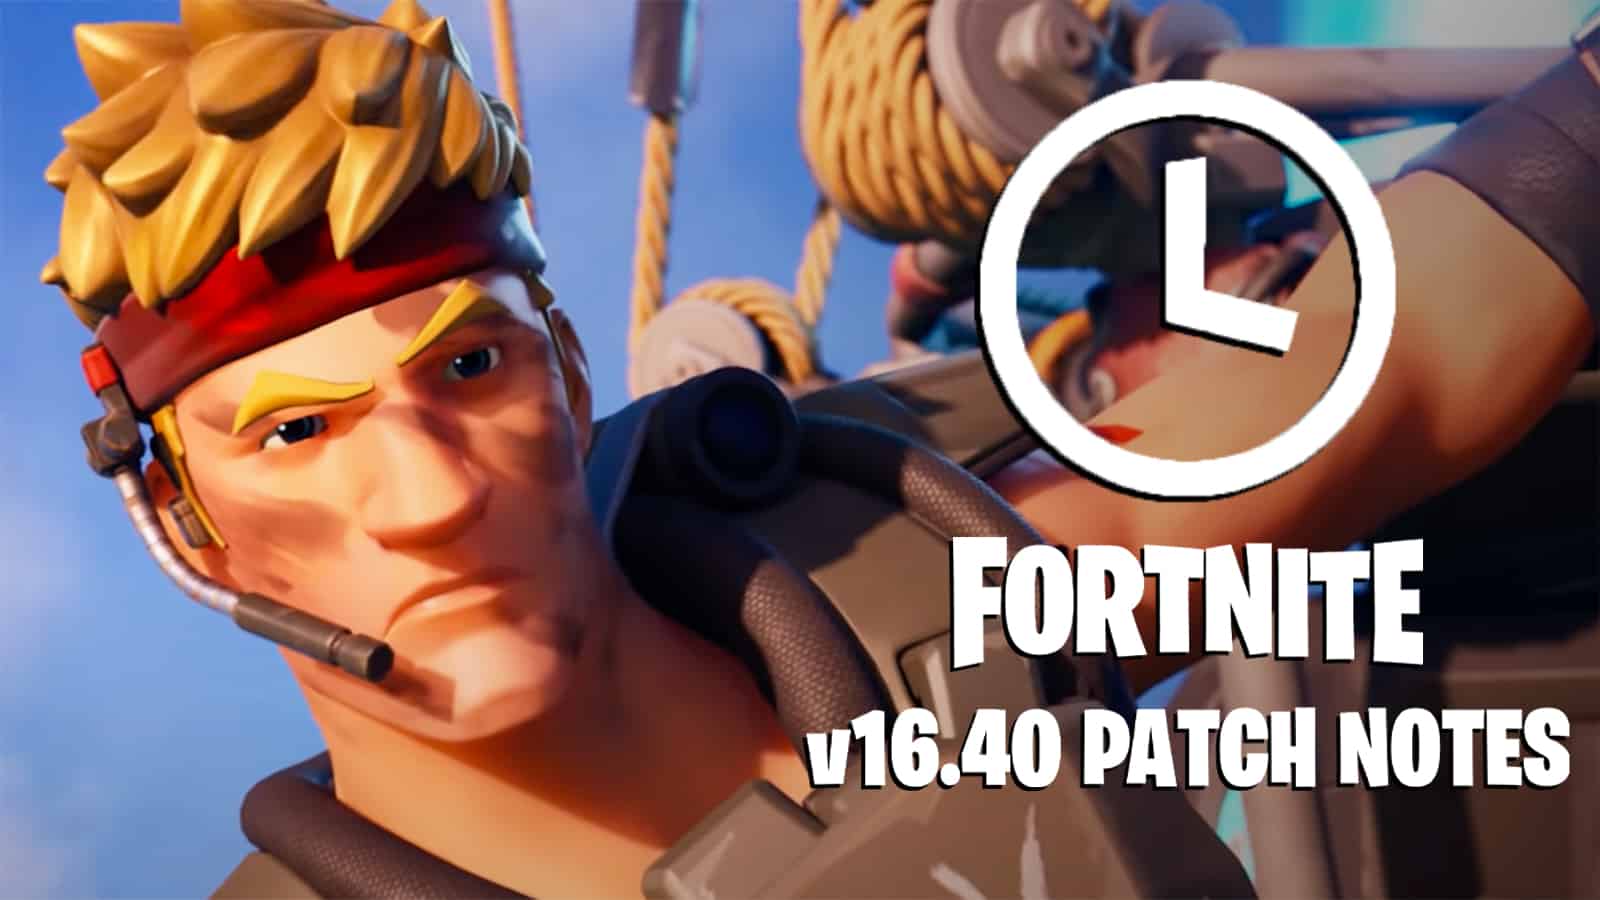 Fortnite 16.40 update